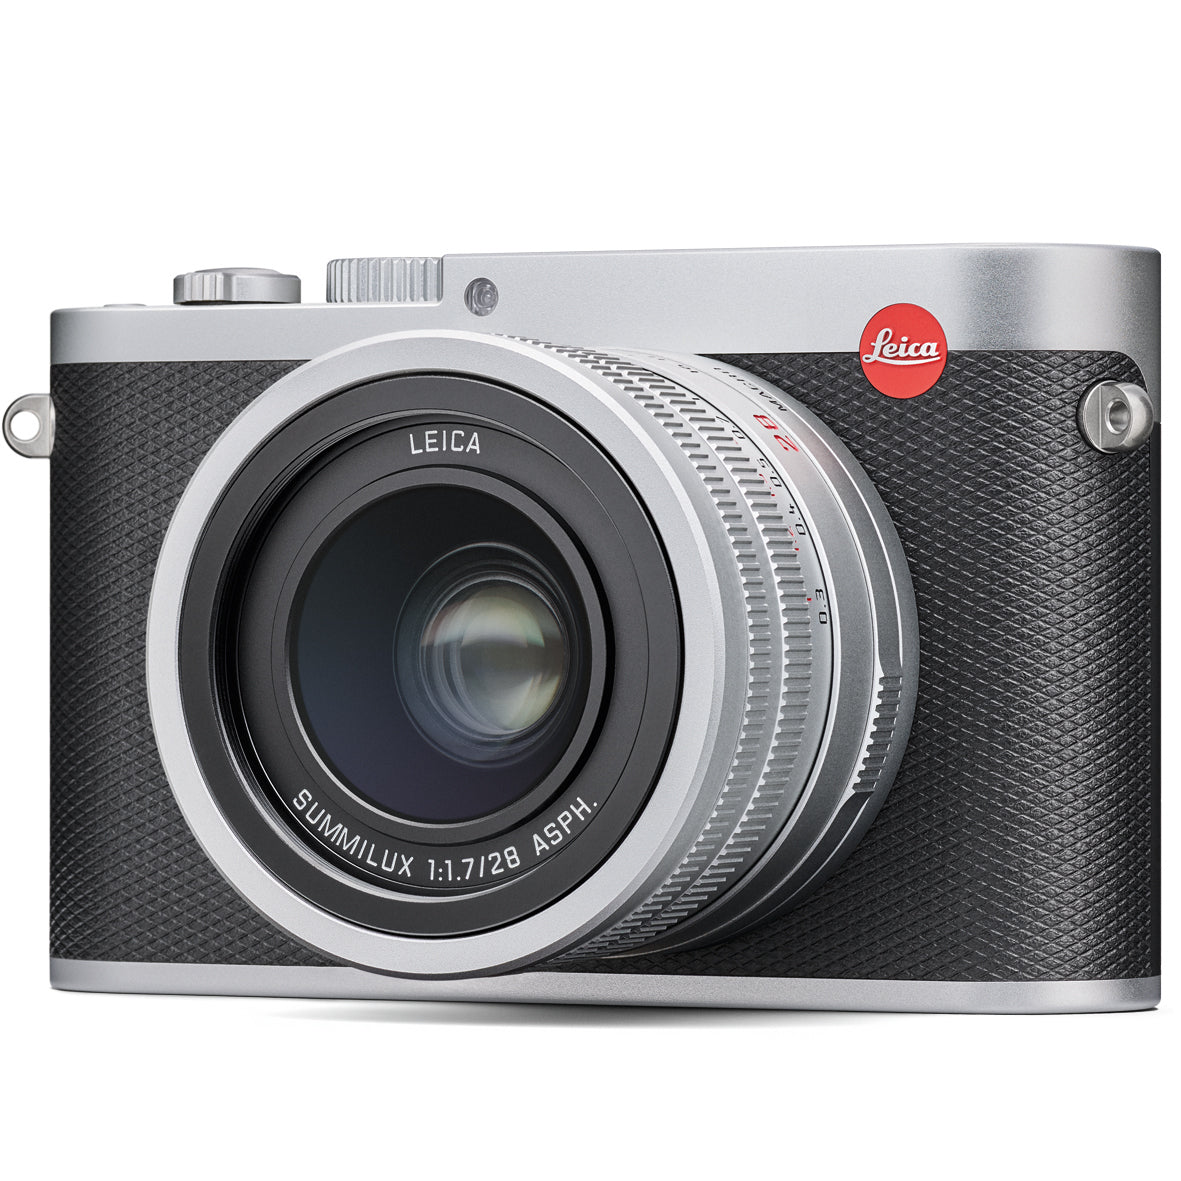 Leica Q (Typ 116) Digital Camera (Silver Anodized)